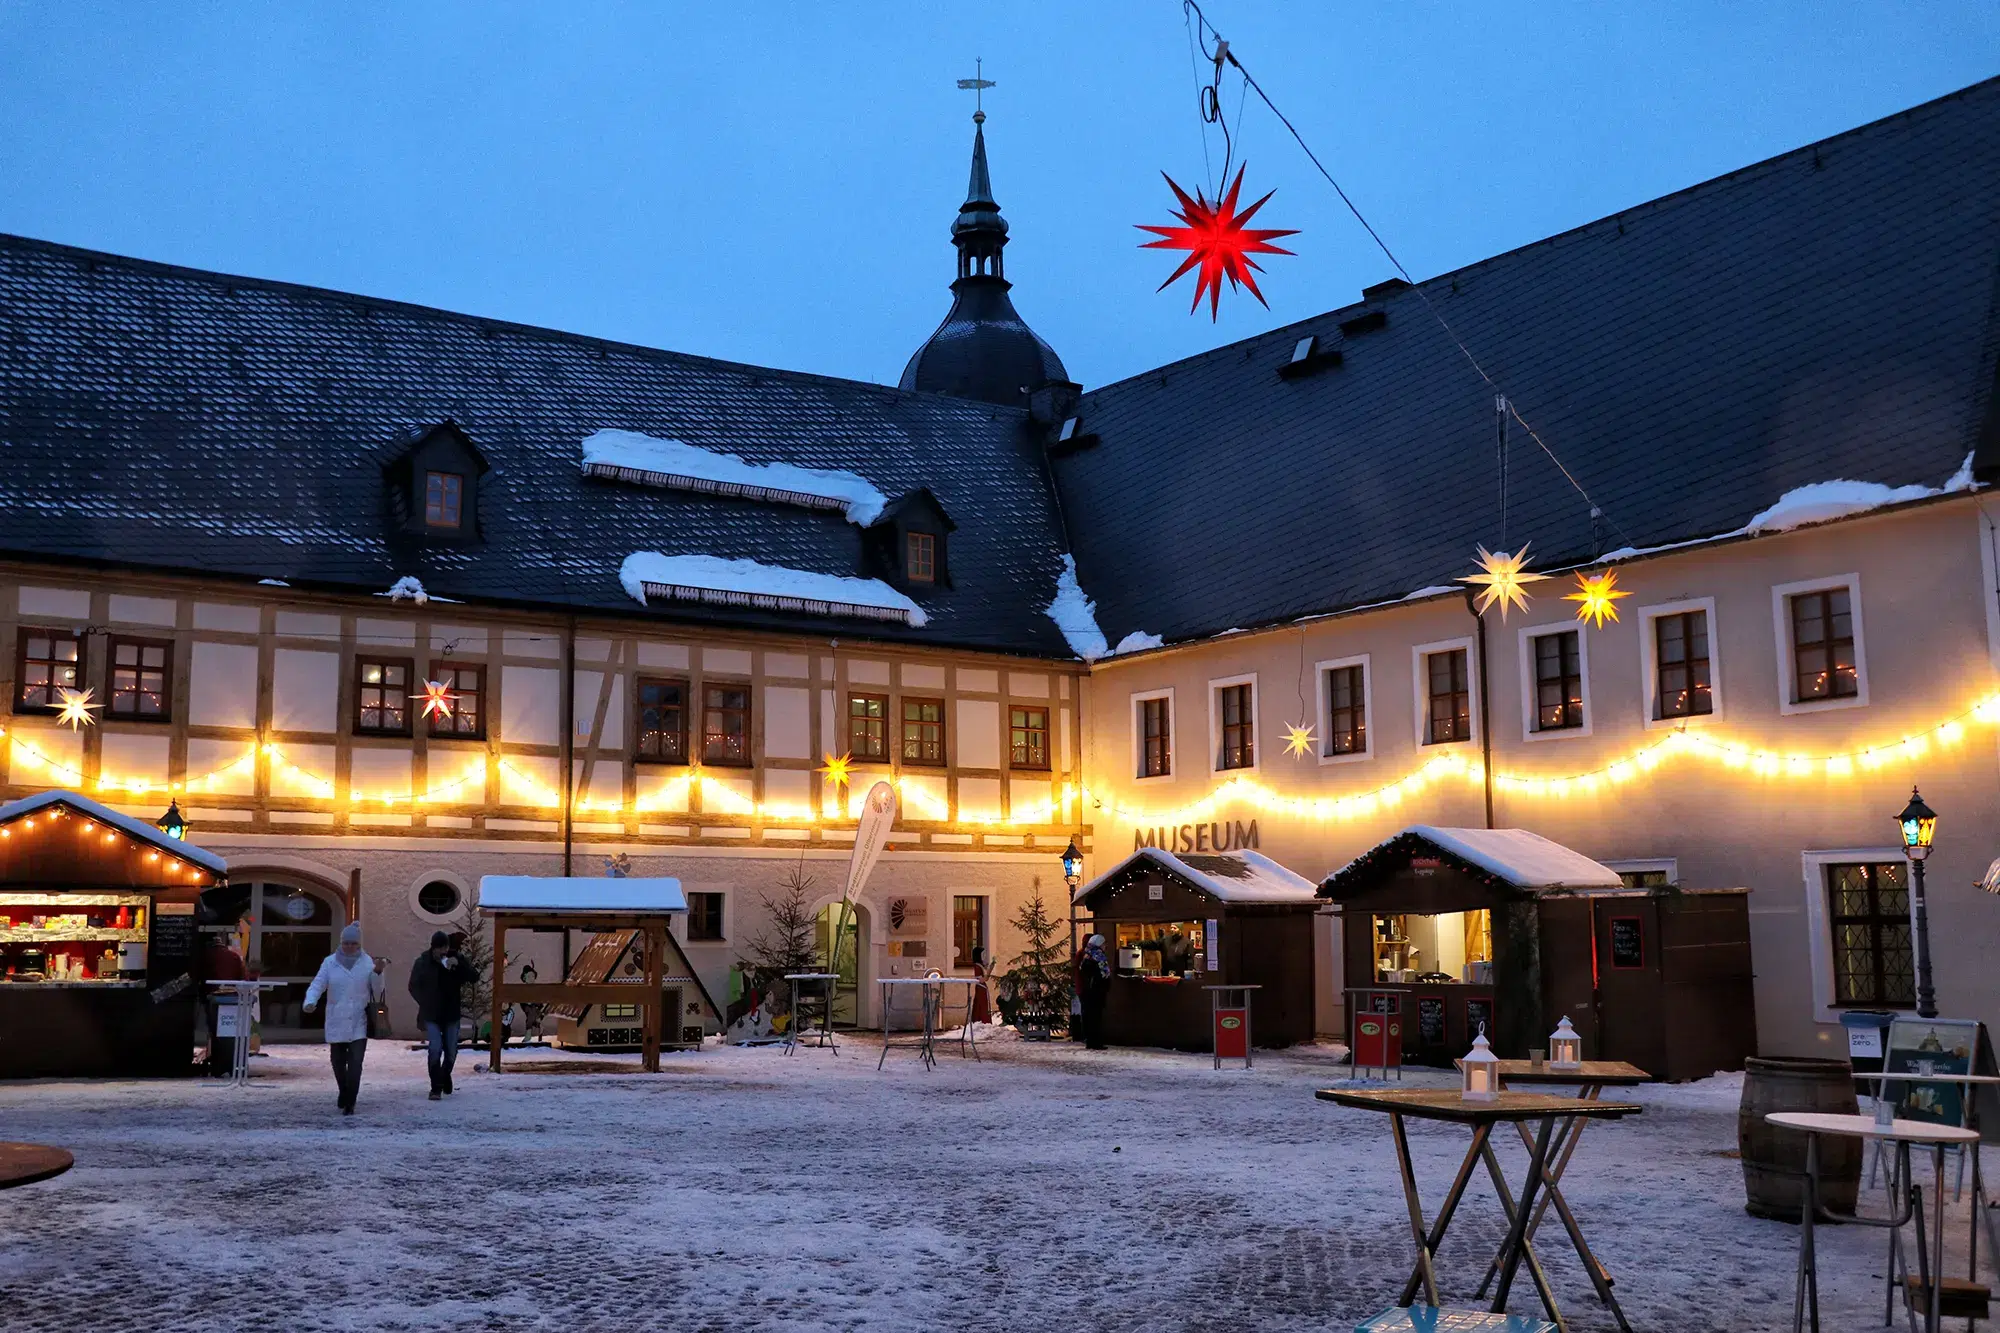 Ertsgebergte, Duitsland - Olbernahuer Weihnachtsmarkt